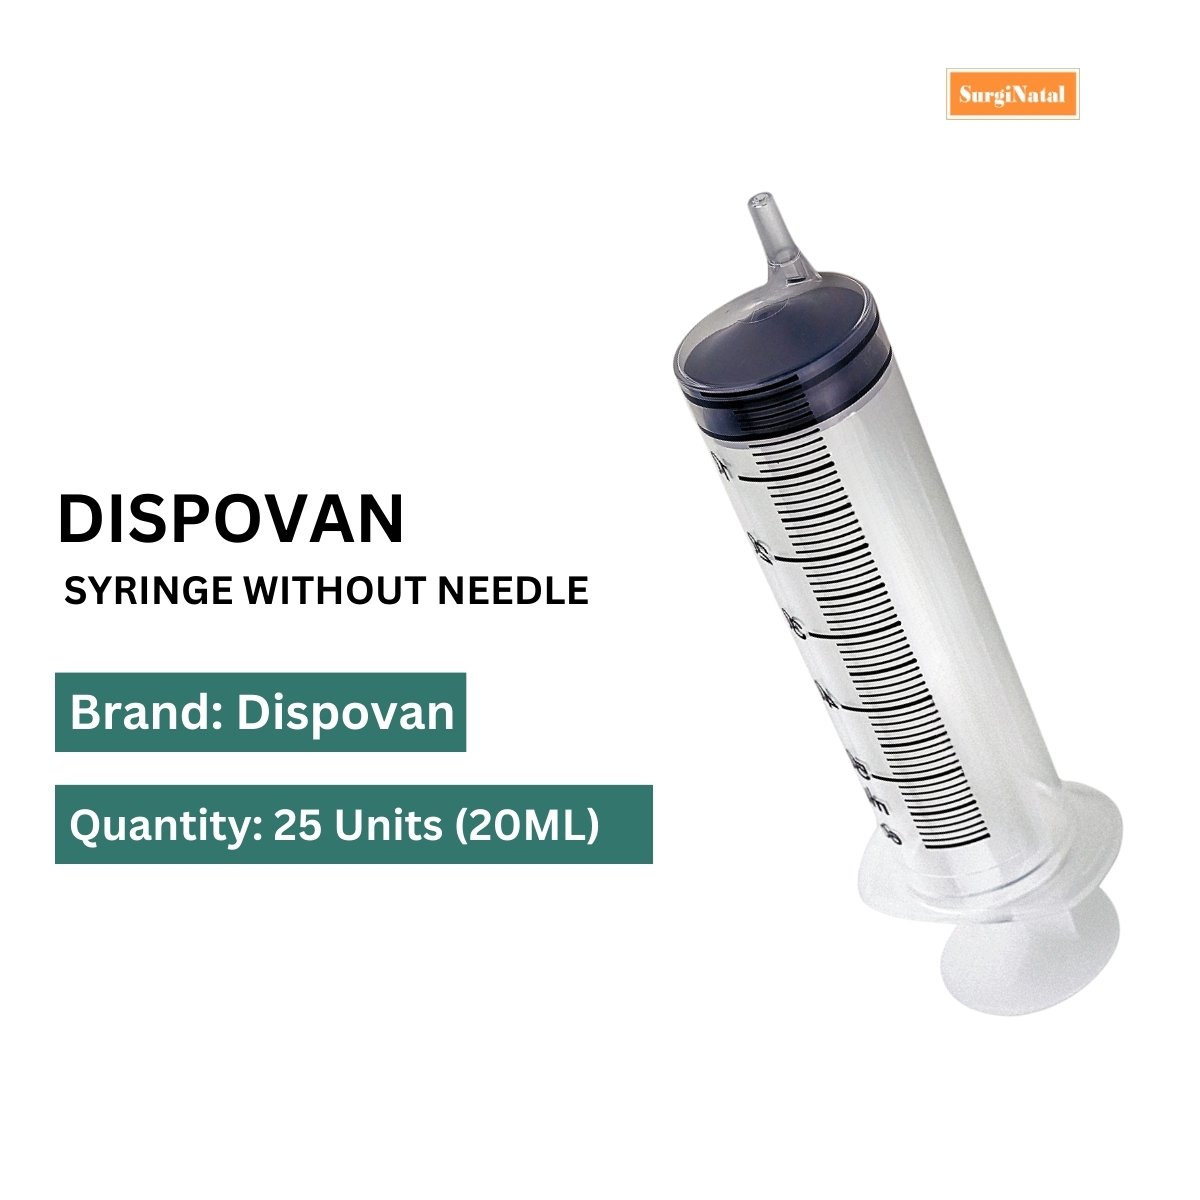 dispo van 20 ml syringe without needle - 25 units pack